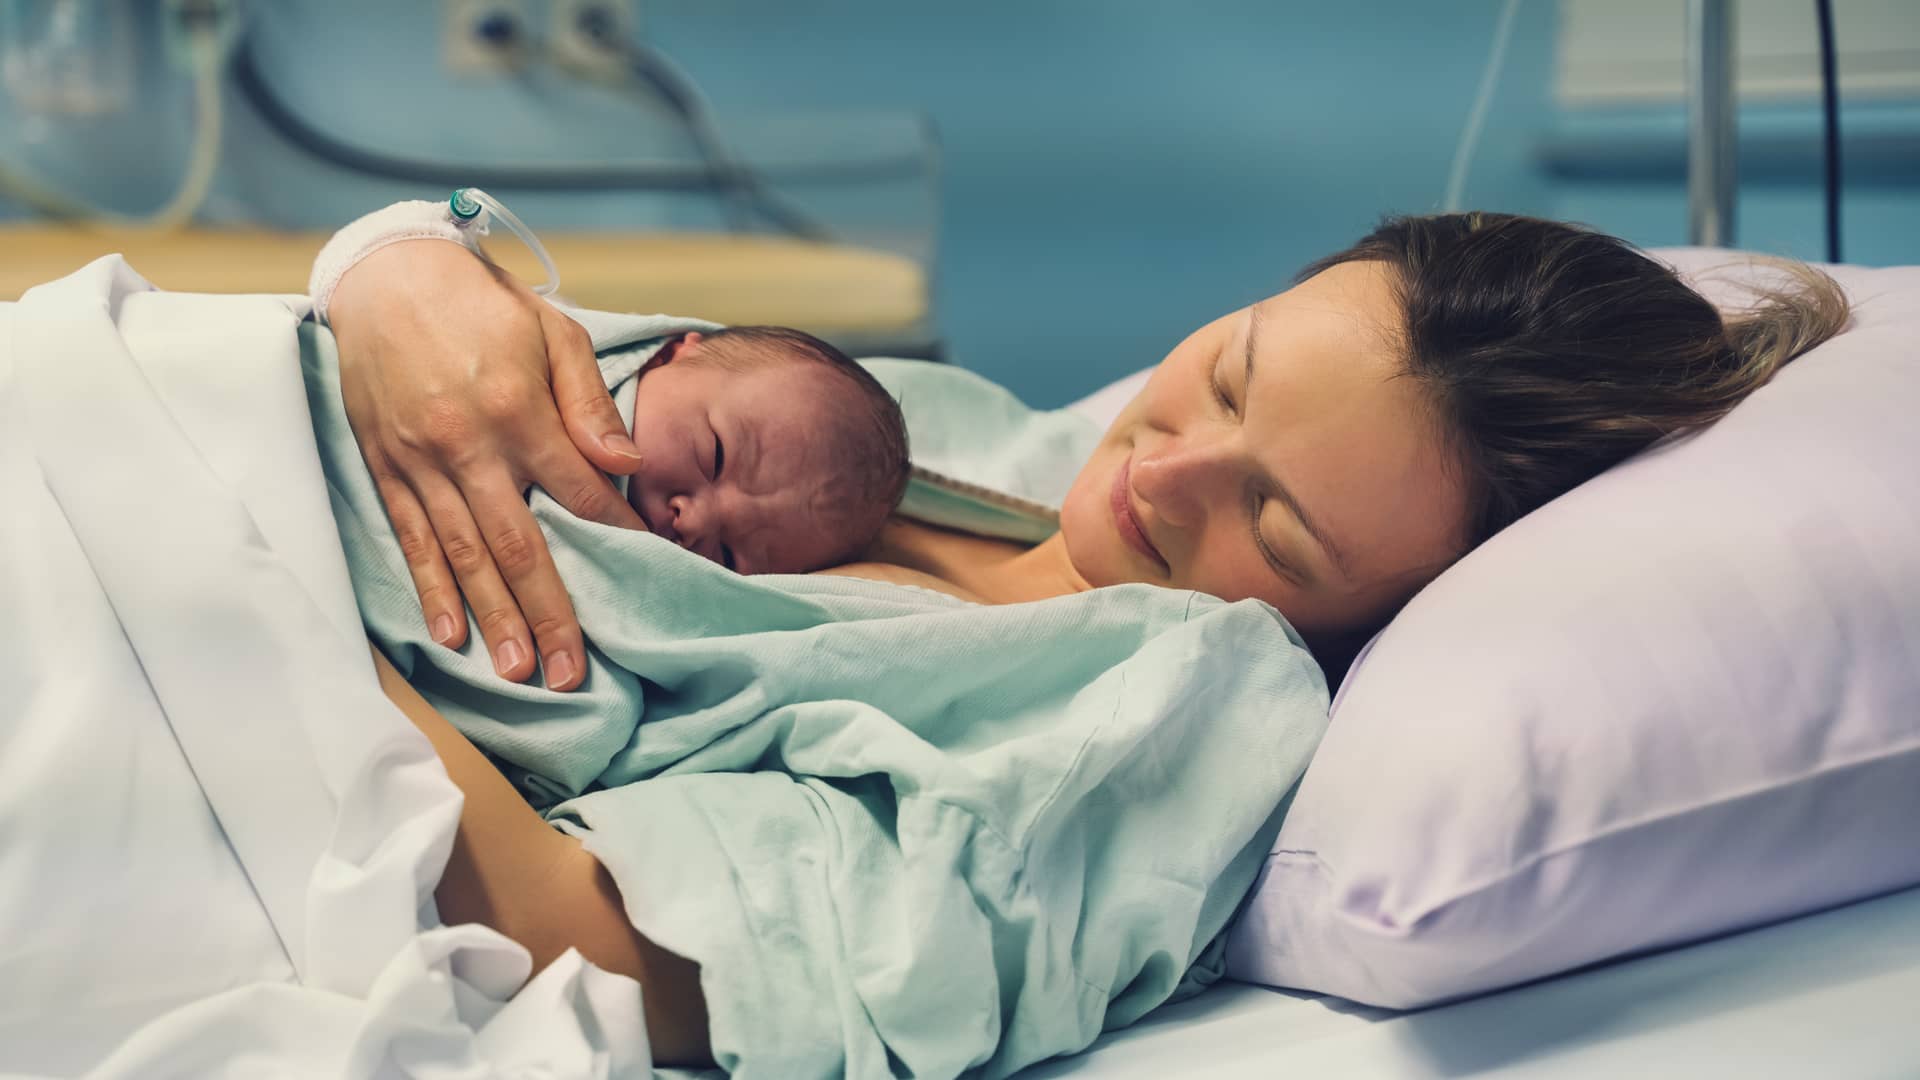 Madre aun en el hospital tras el parto con su bebe recién nacido en brazos